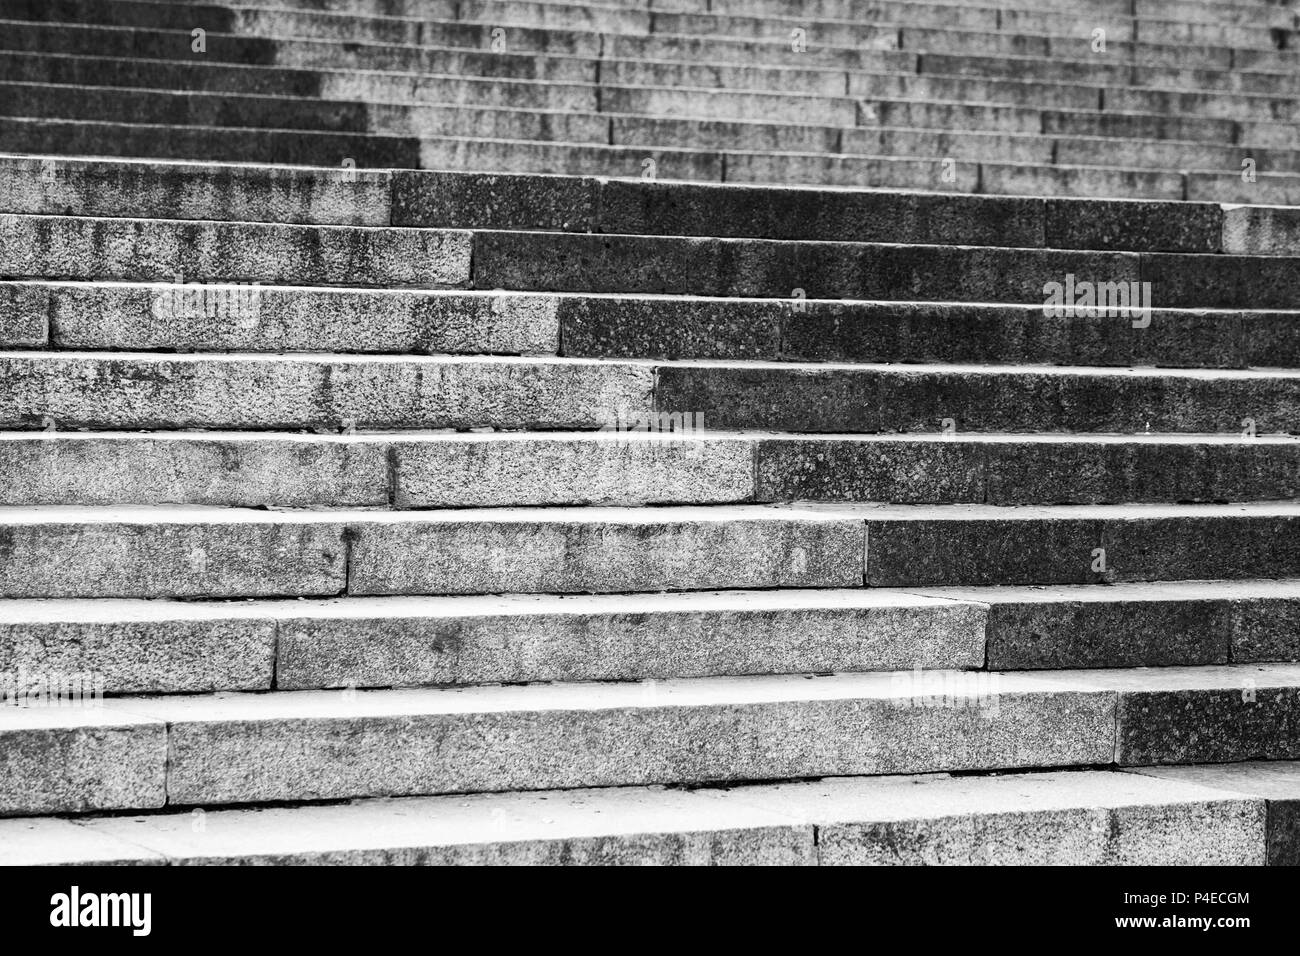 Abstract architettura frammento. Vecchia scalinata di granito grigio di blocchi di pietra, con motivo decorativo Foto Stock